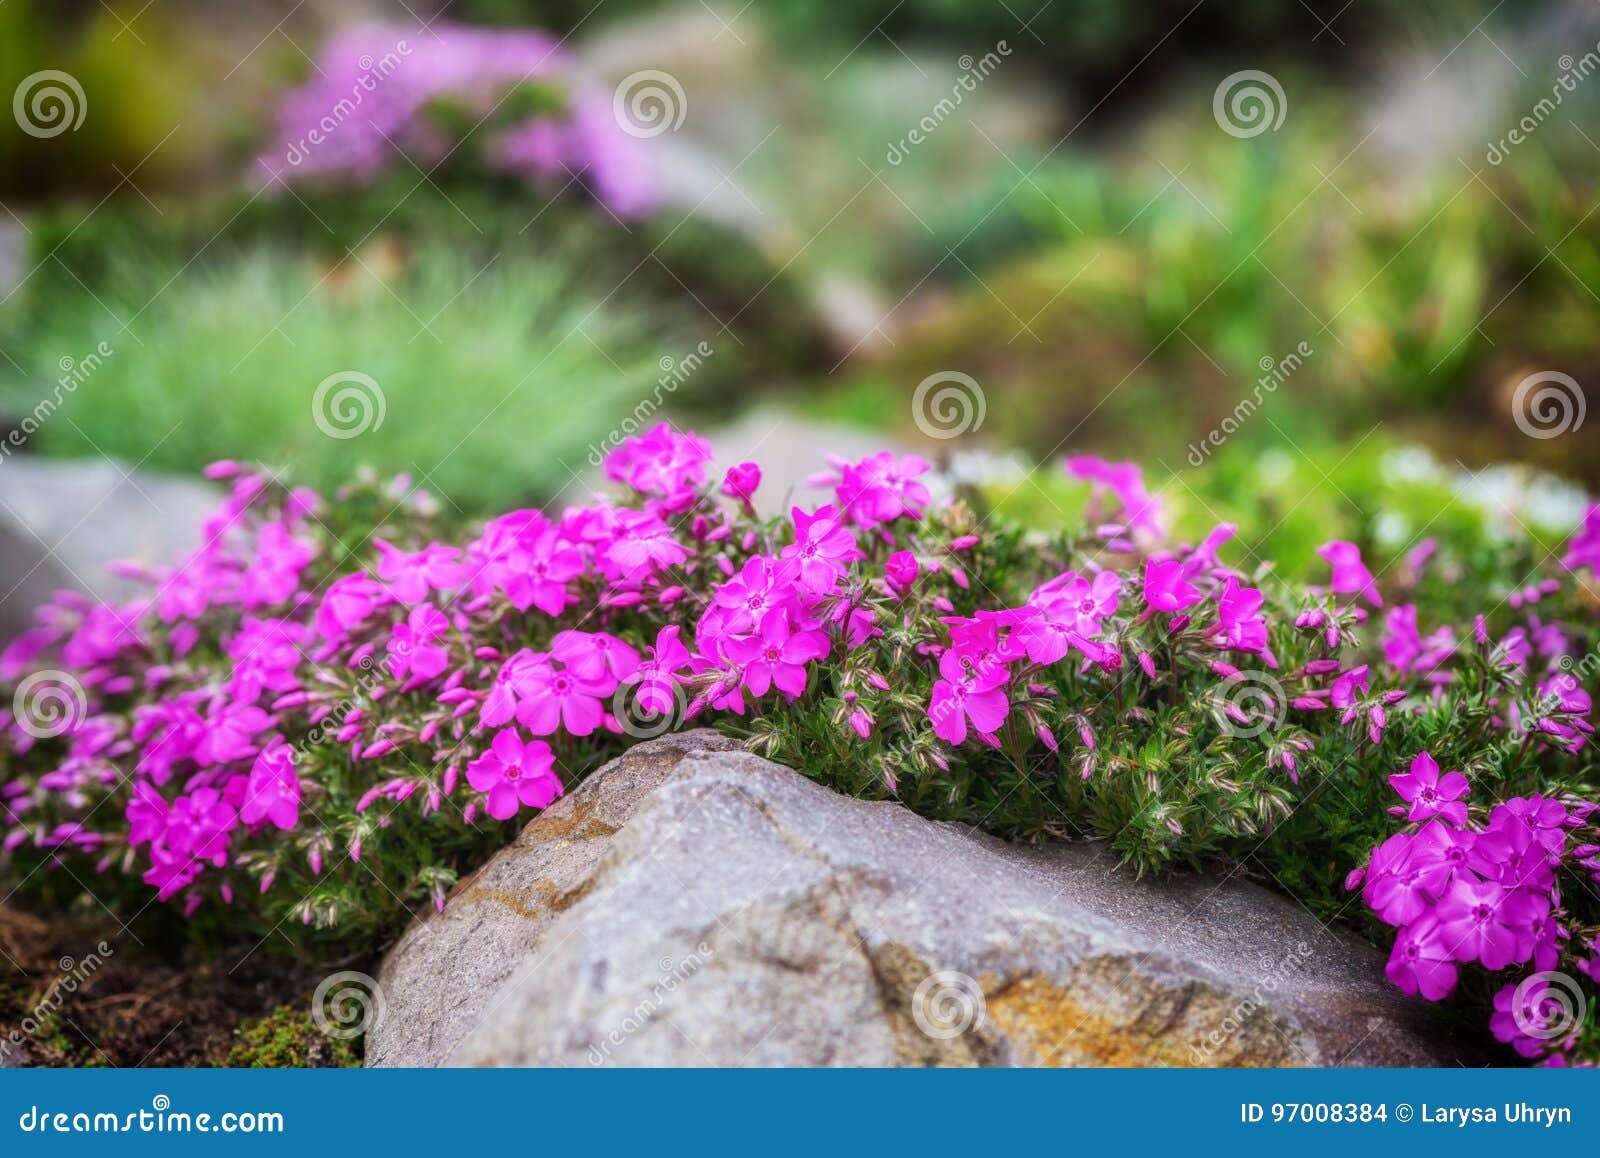 Jardin De Rocaille Avec De Petites Fleurs Assez Violettes De Phlox Photo  stock - Image du fleurs, fond: 97008384